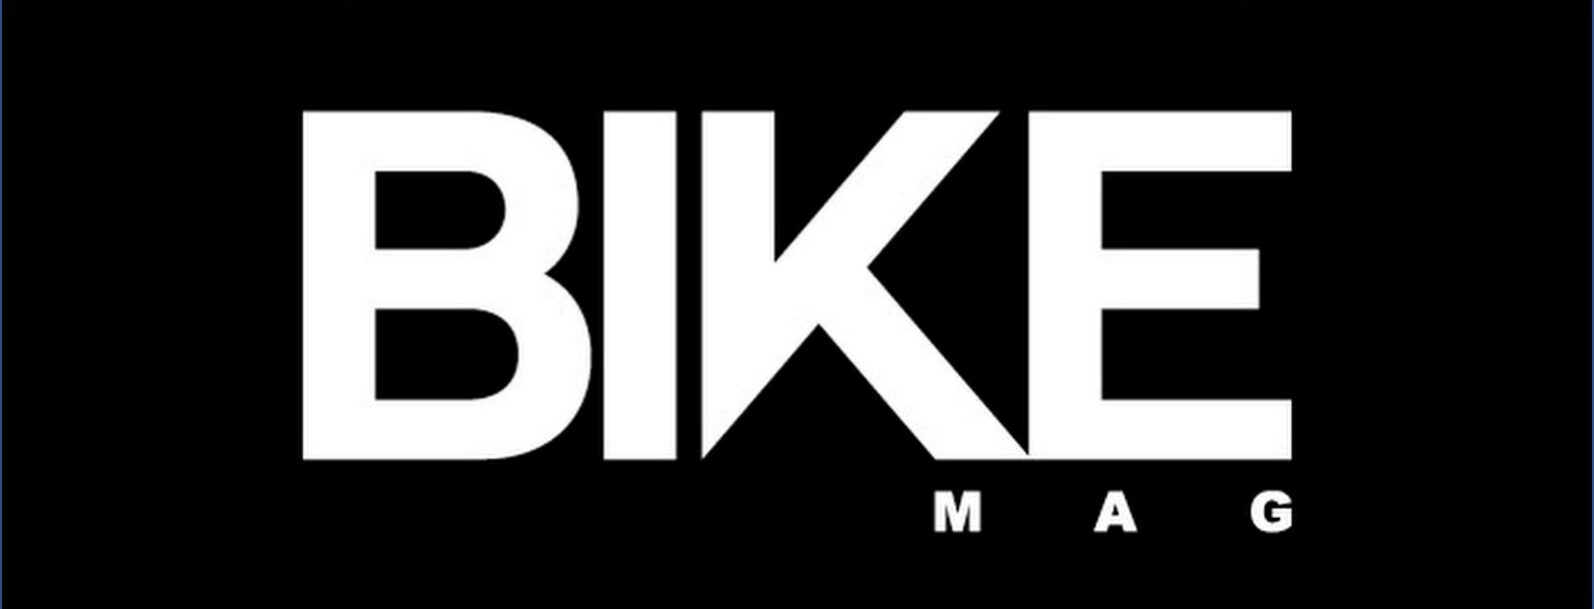 bikemag_logo-e1558015268428.jpg